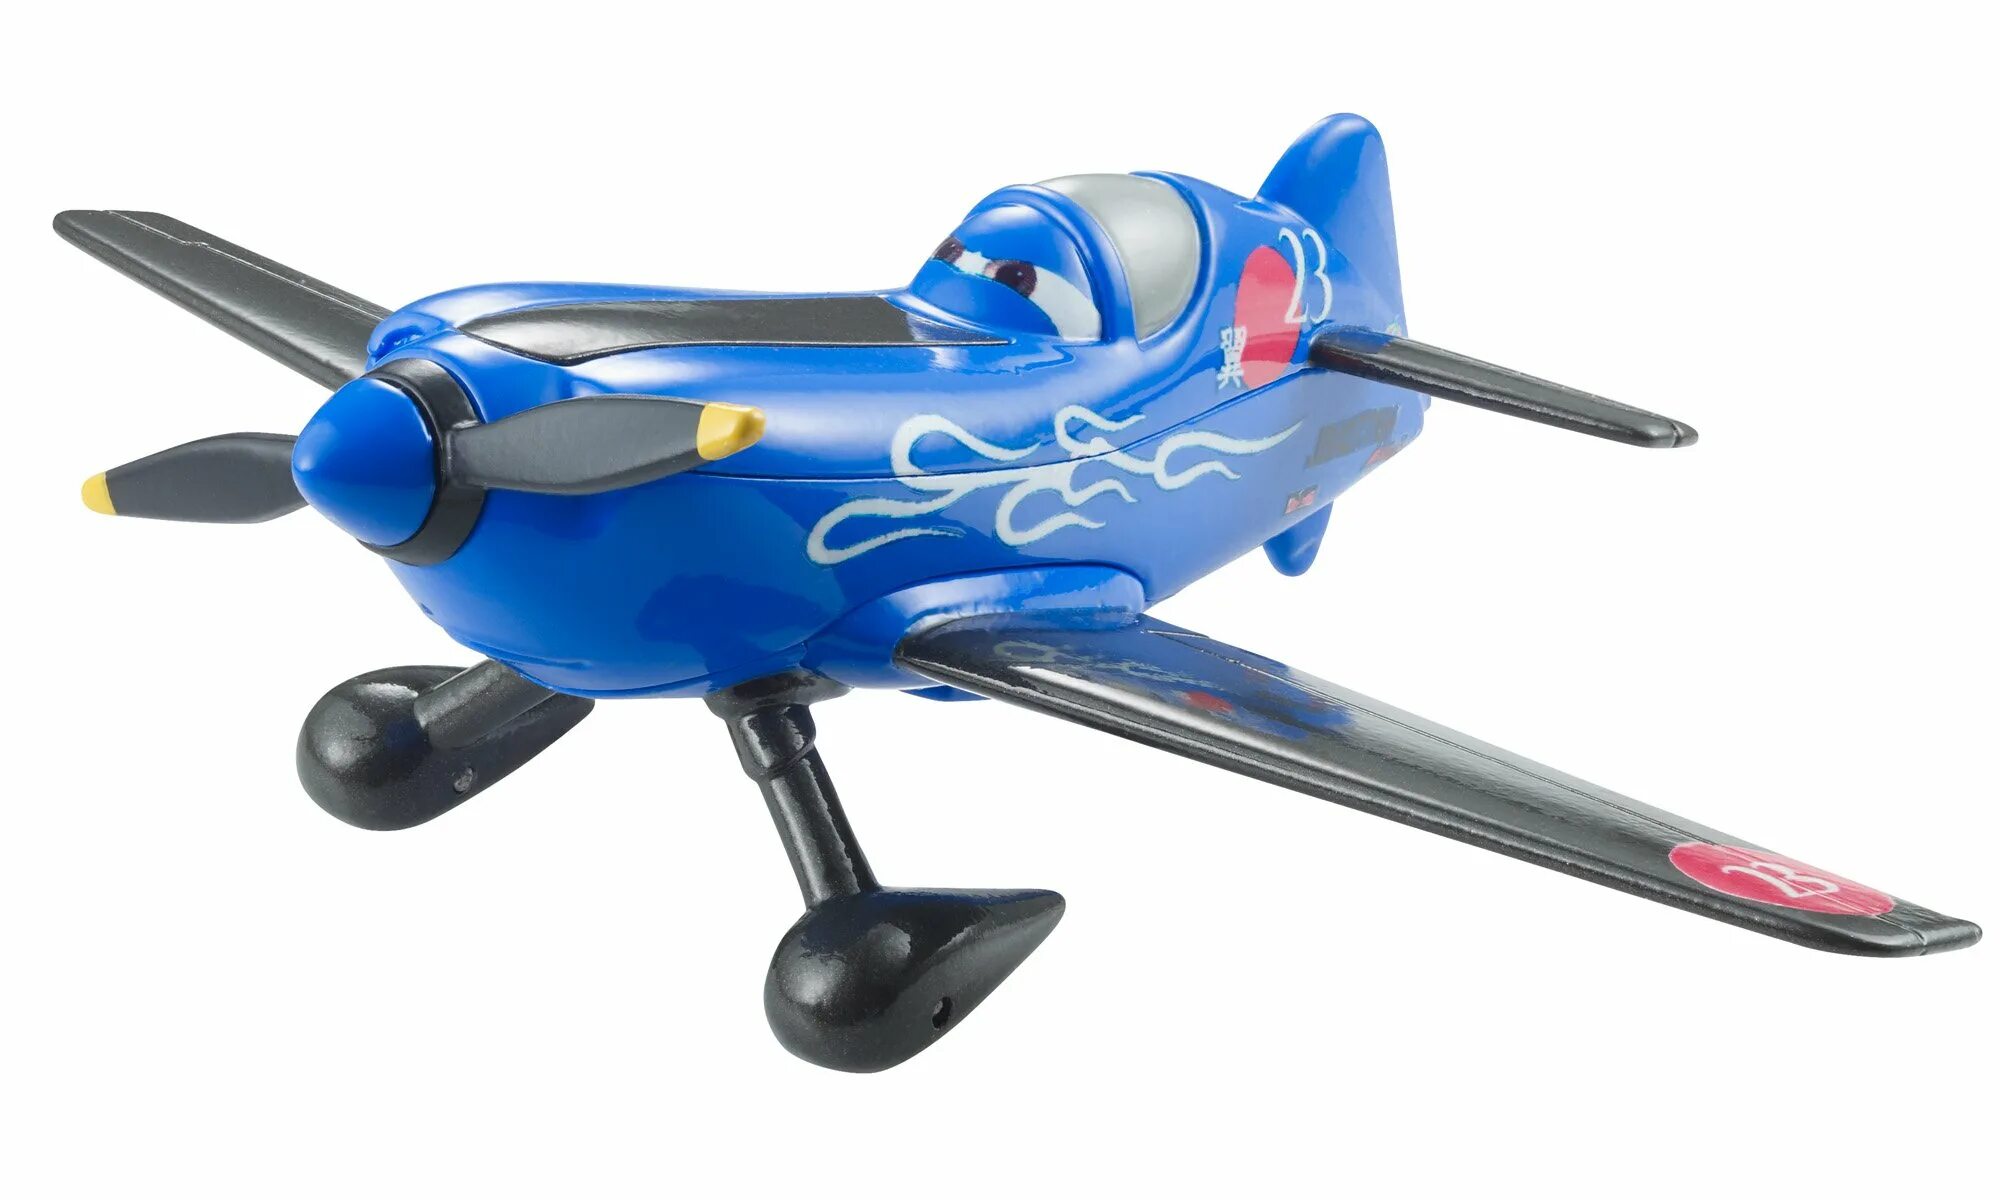 Как можно купить самолет. Игрушки самолеты Дисней Дасти. Самолет Dusty игрушка Disney-Pixar. Самолёты Дасти Полейполе игрушки. Mattel planes Disney самолеты.